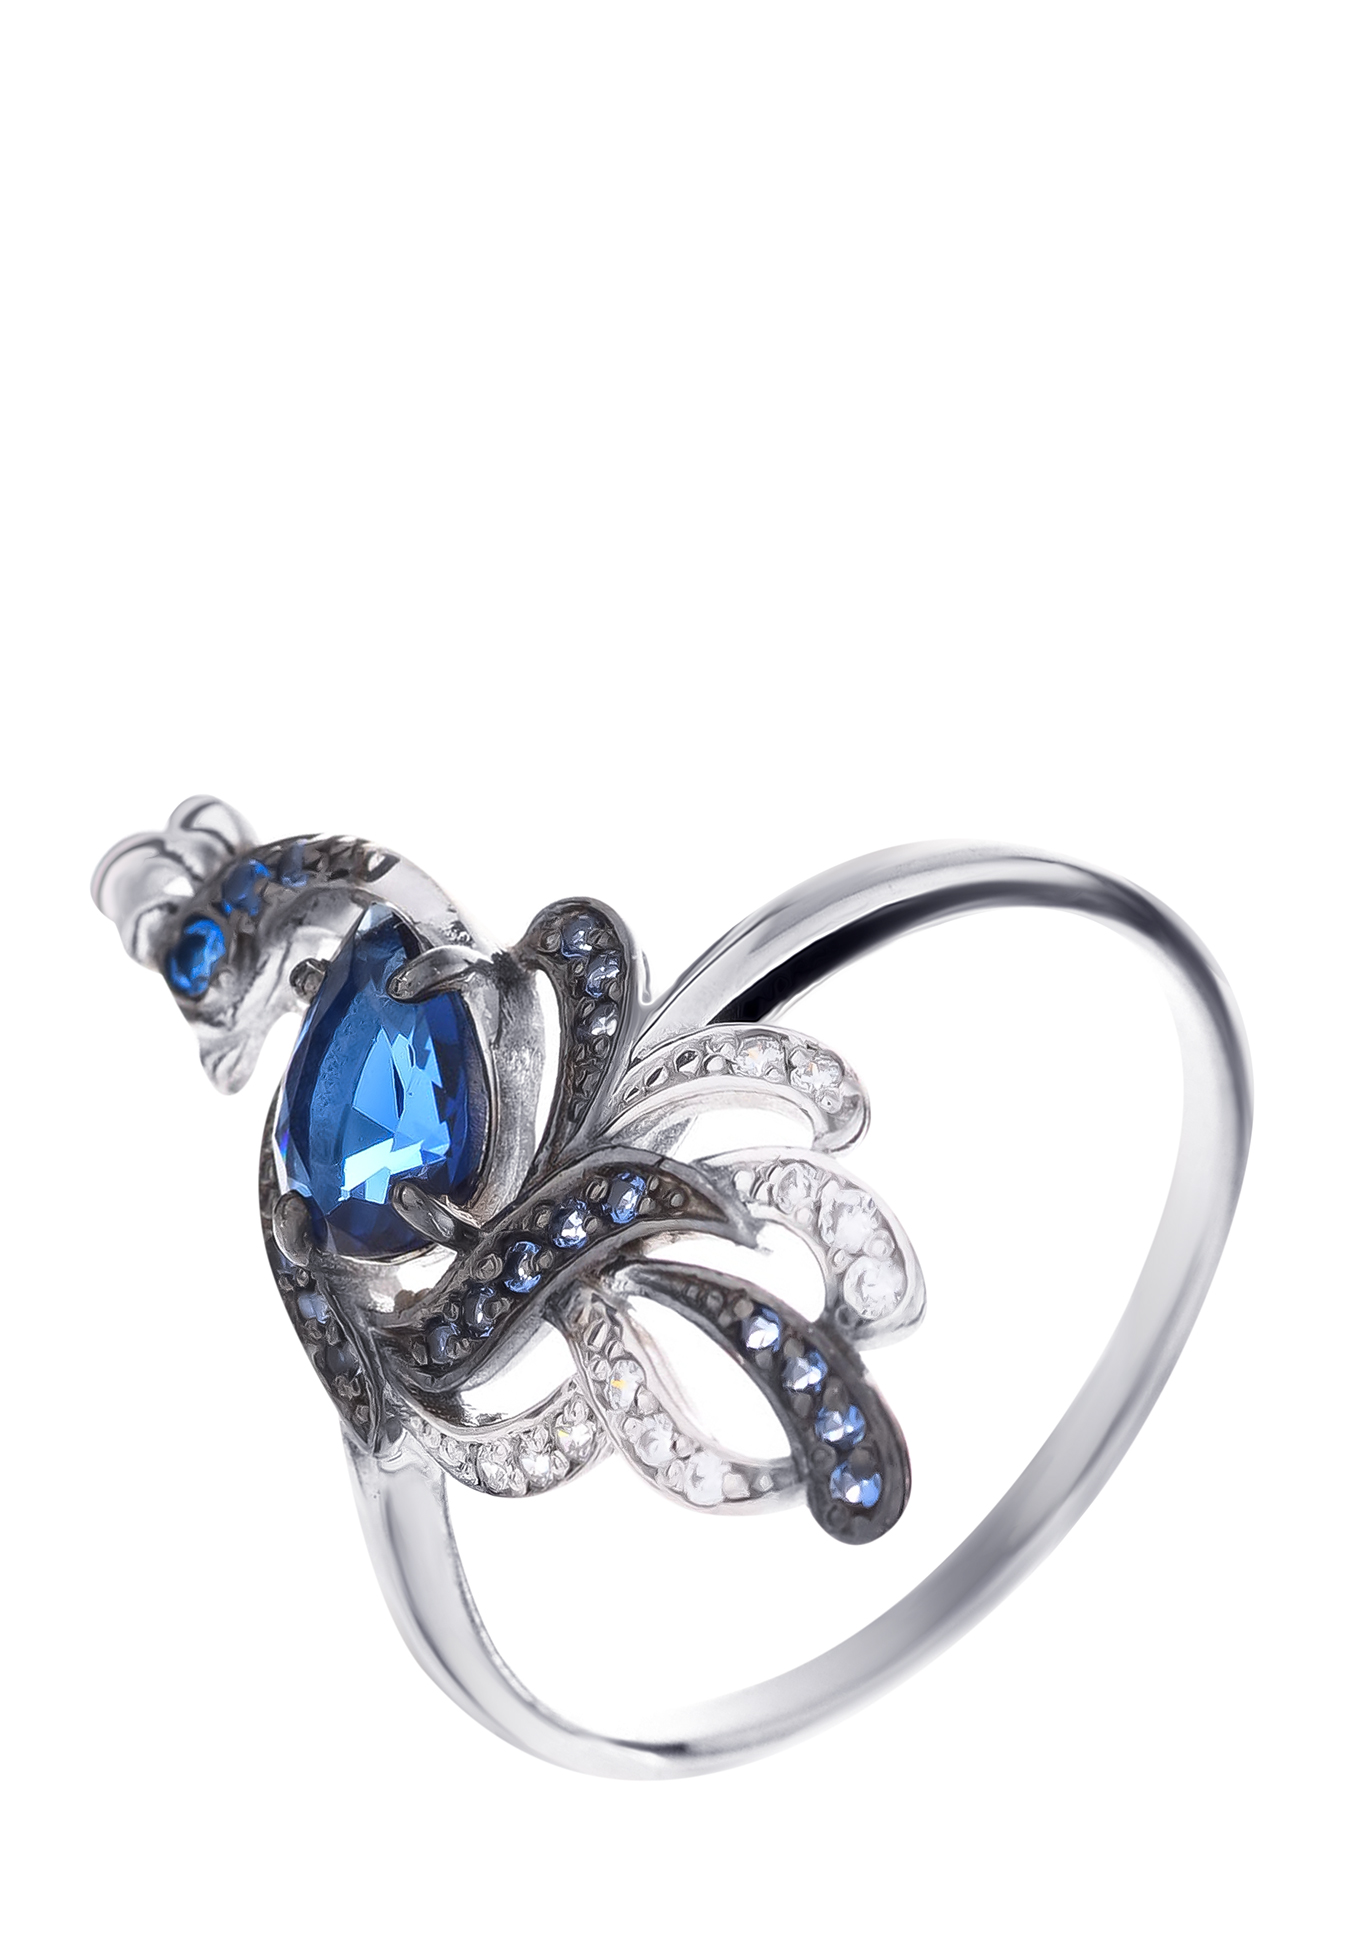 Серебряное кольцо «Волшебная птица» Серебряный Дом, цвет синий, размер 16 кластер - фото 1